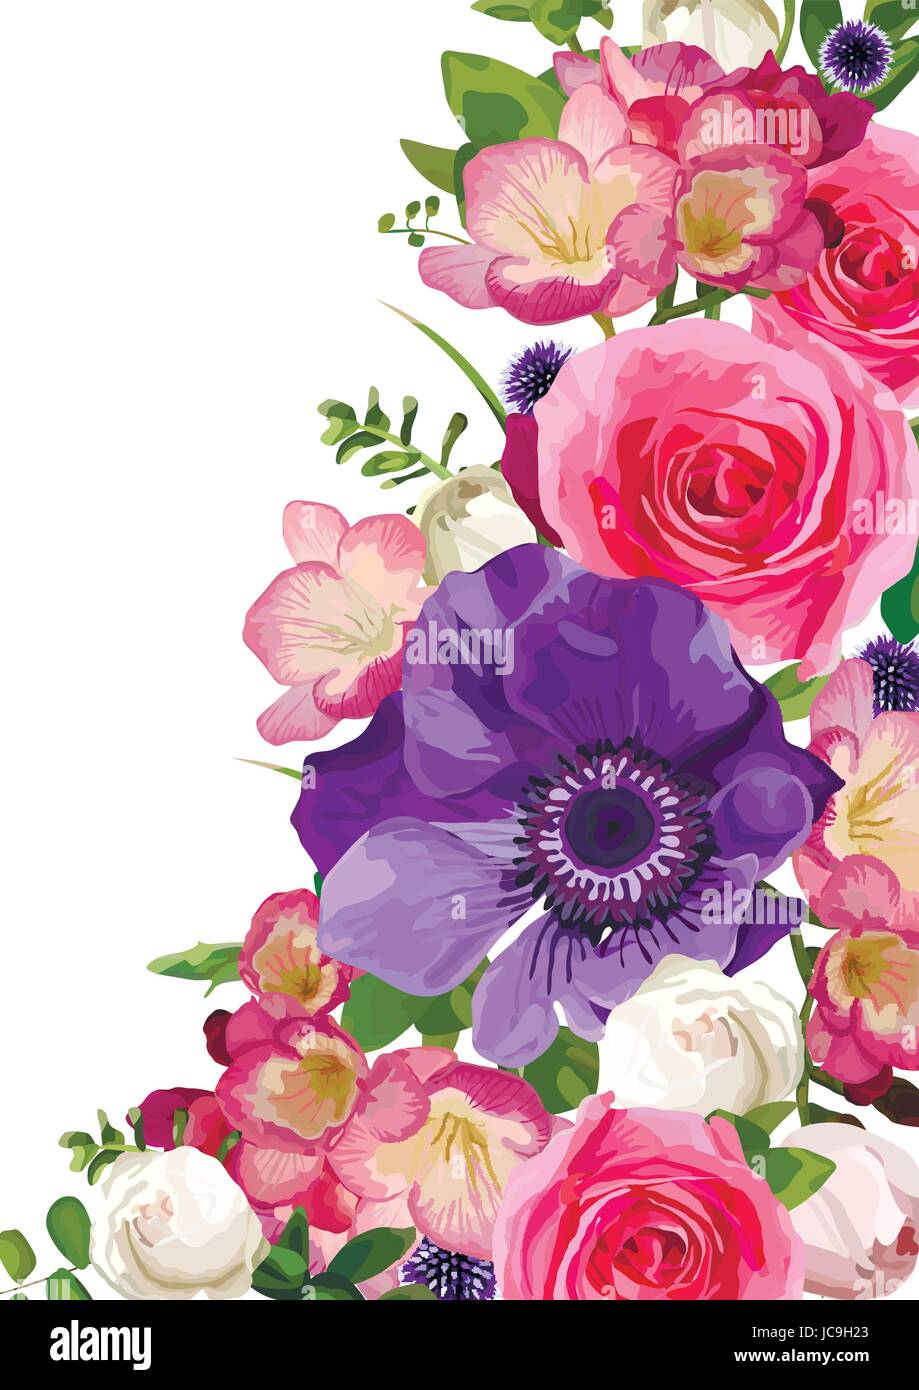 Blume Blumen heißen rosa Rose Anemone Distel lässt schöne schönen Frühling Sommer Bouquet Vektor-Illustration. Ansicht von oben eckig elegante Aquarell Stock Vektor